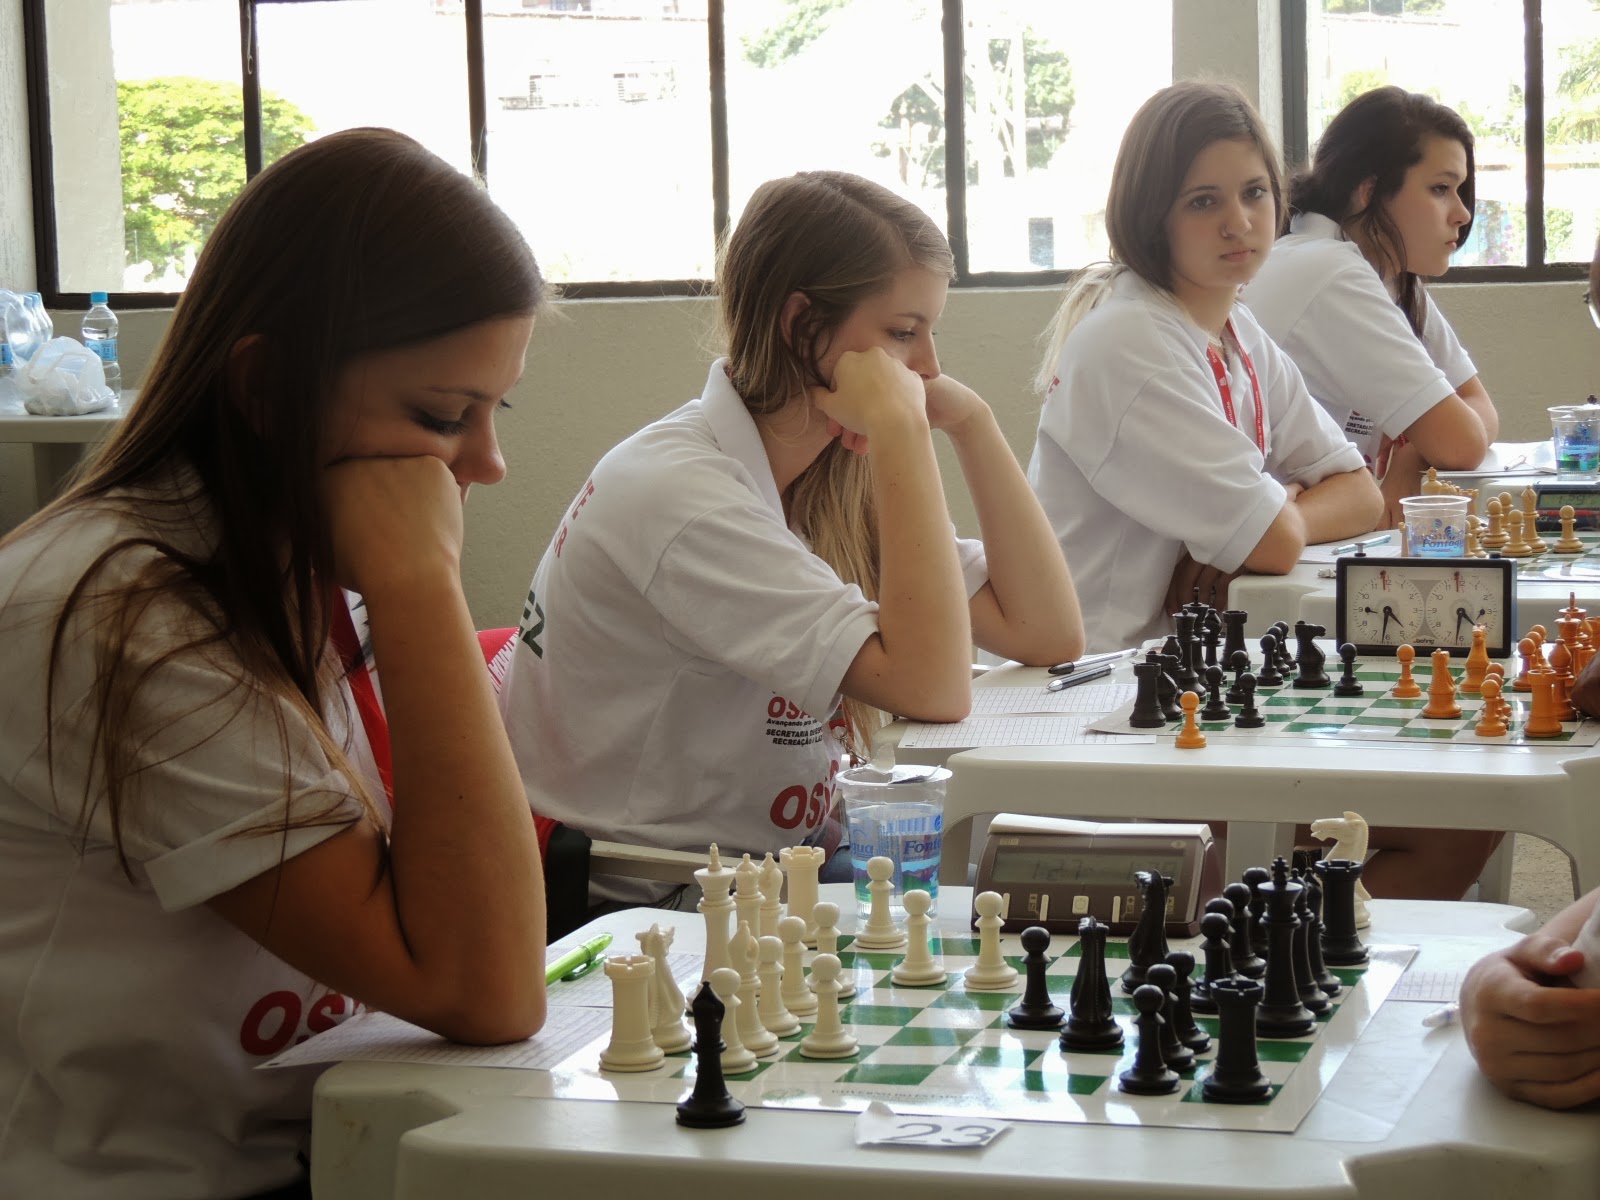 Enxadrista osasquense participa de competição na Bahia - Prefeitura de  Osasco